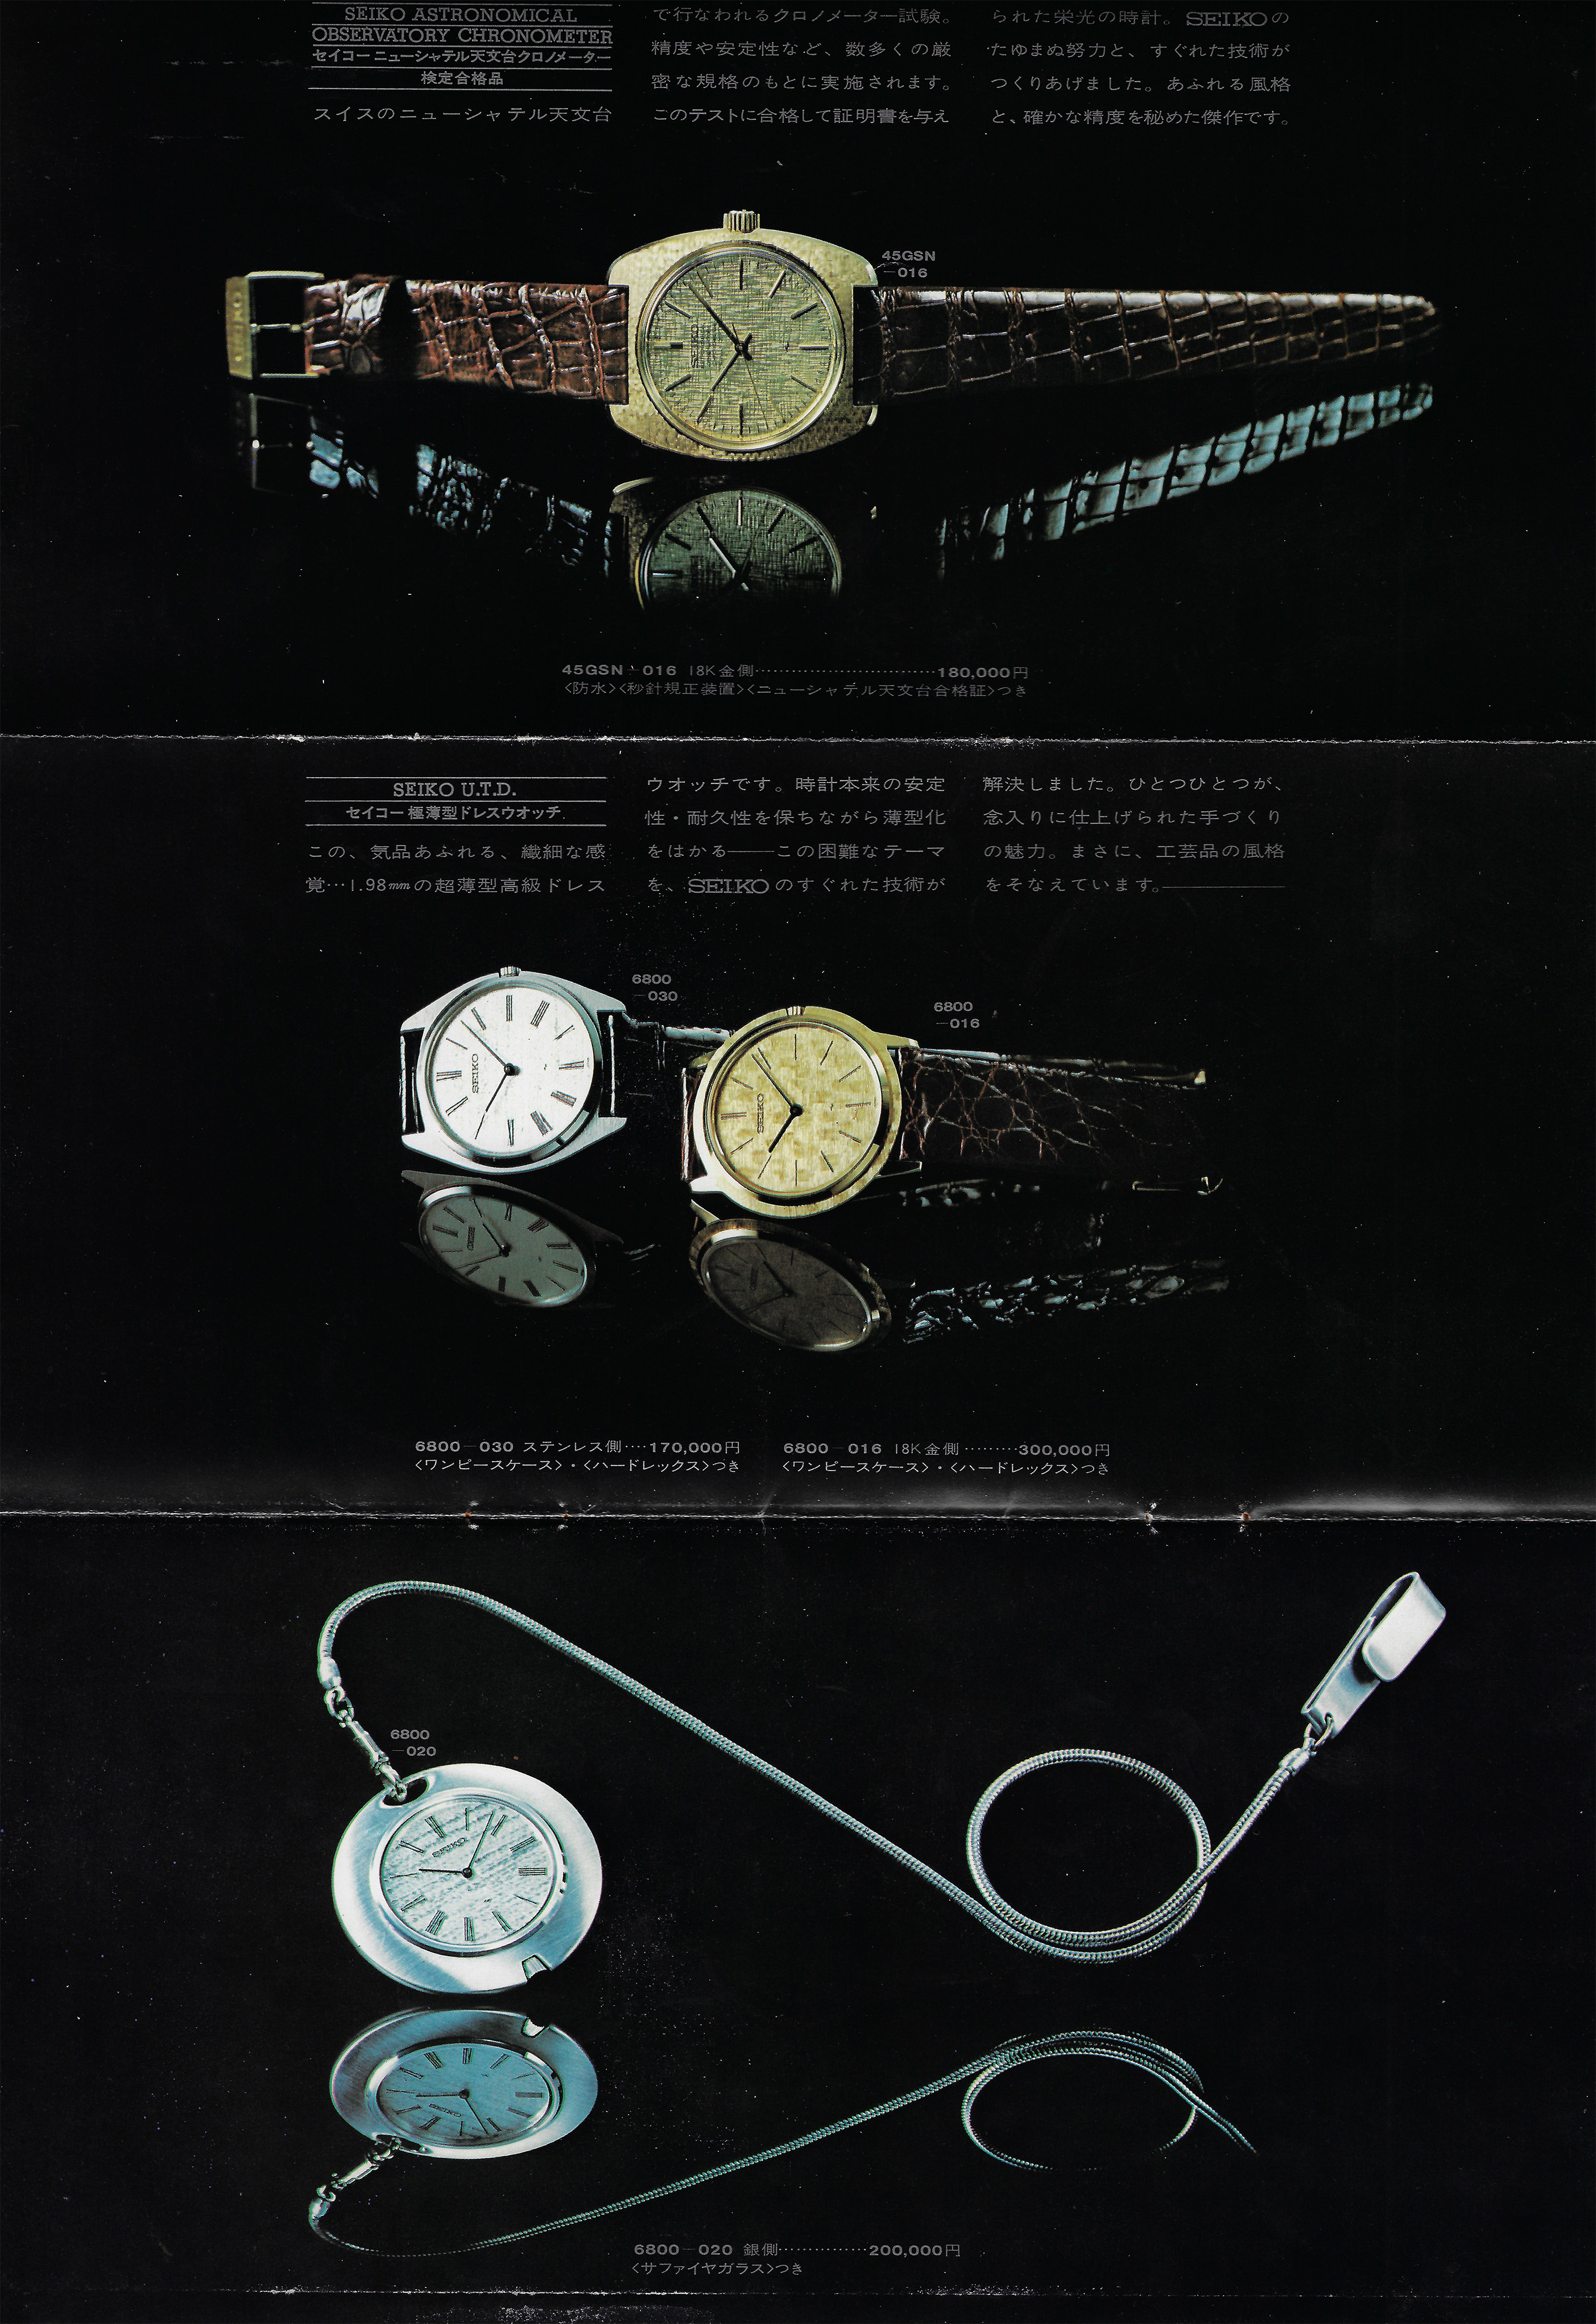 SEIKO 85 SEIKO セイコー ウォッチ外装部品セット表 1979年9-11月モデル チラシ 広告 パンフレット カタログ 冊子 リーフレット 見本 等 精工舎